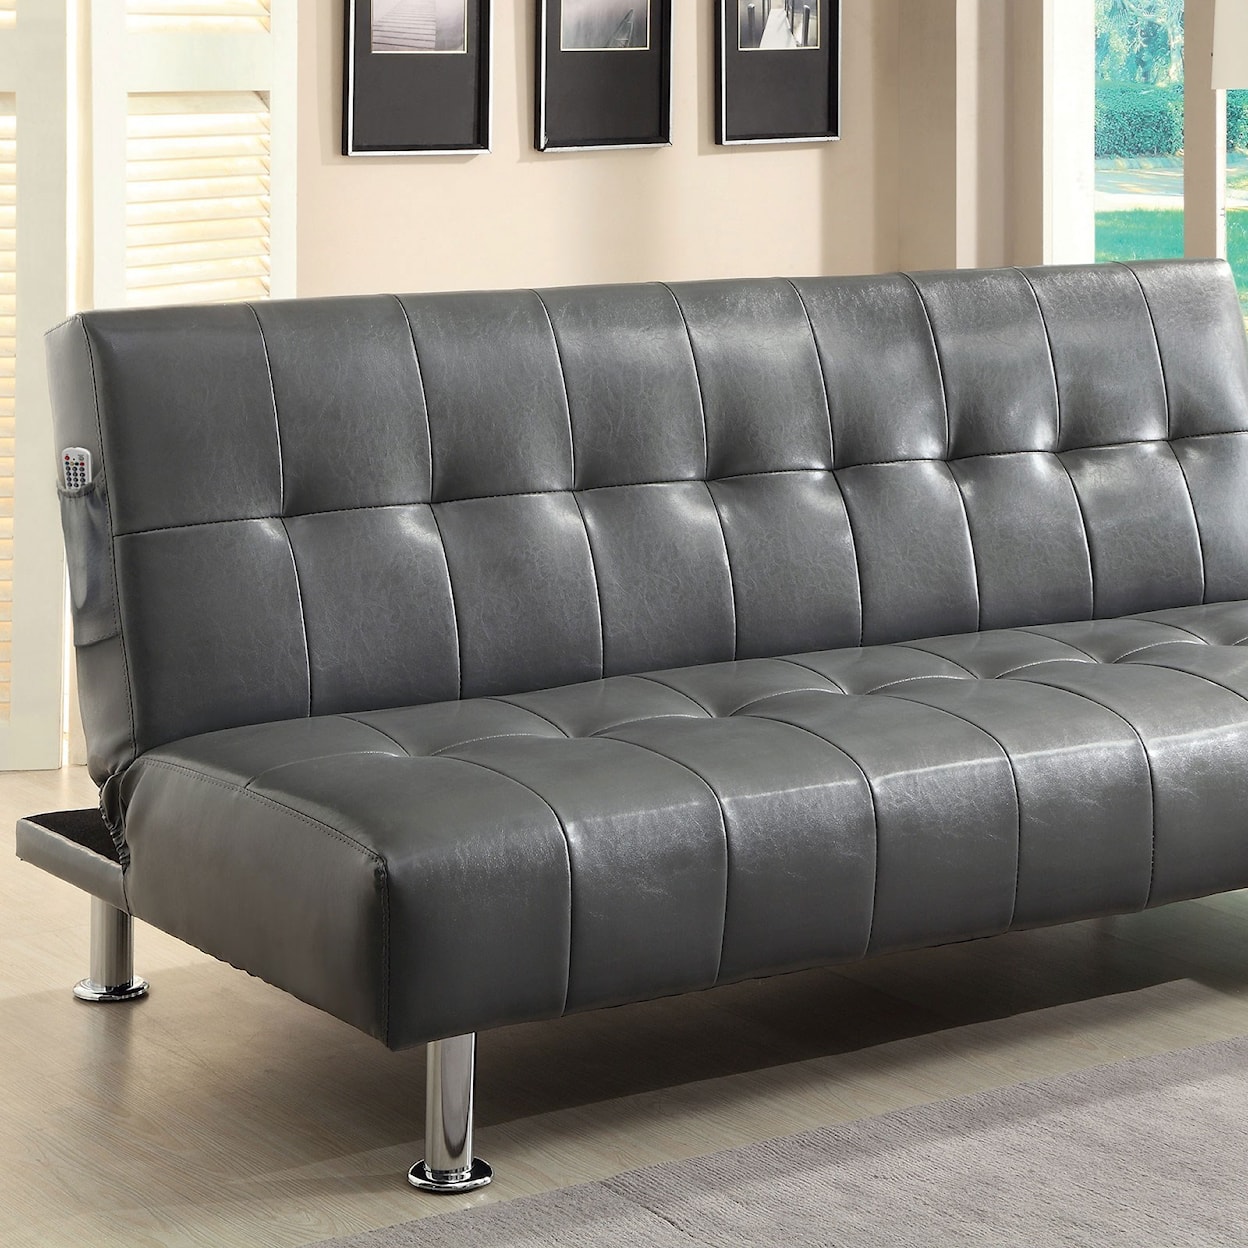 Furniture of America Bulle Leatherette Futon Sofa